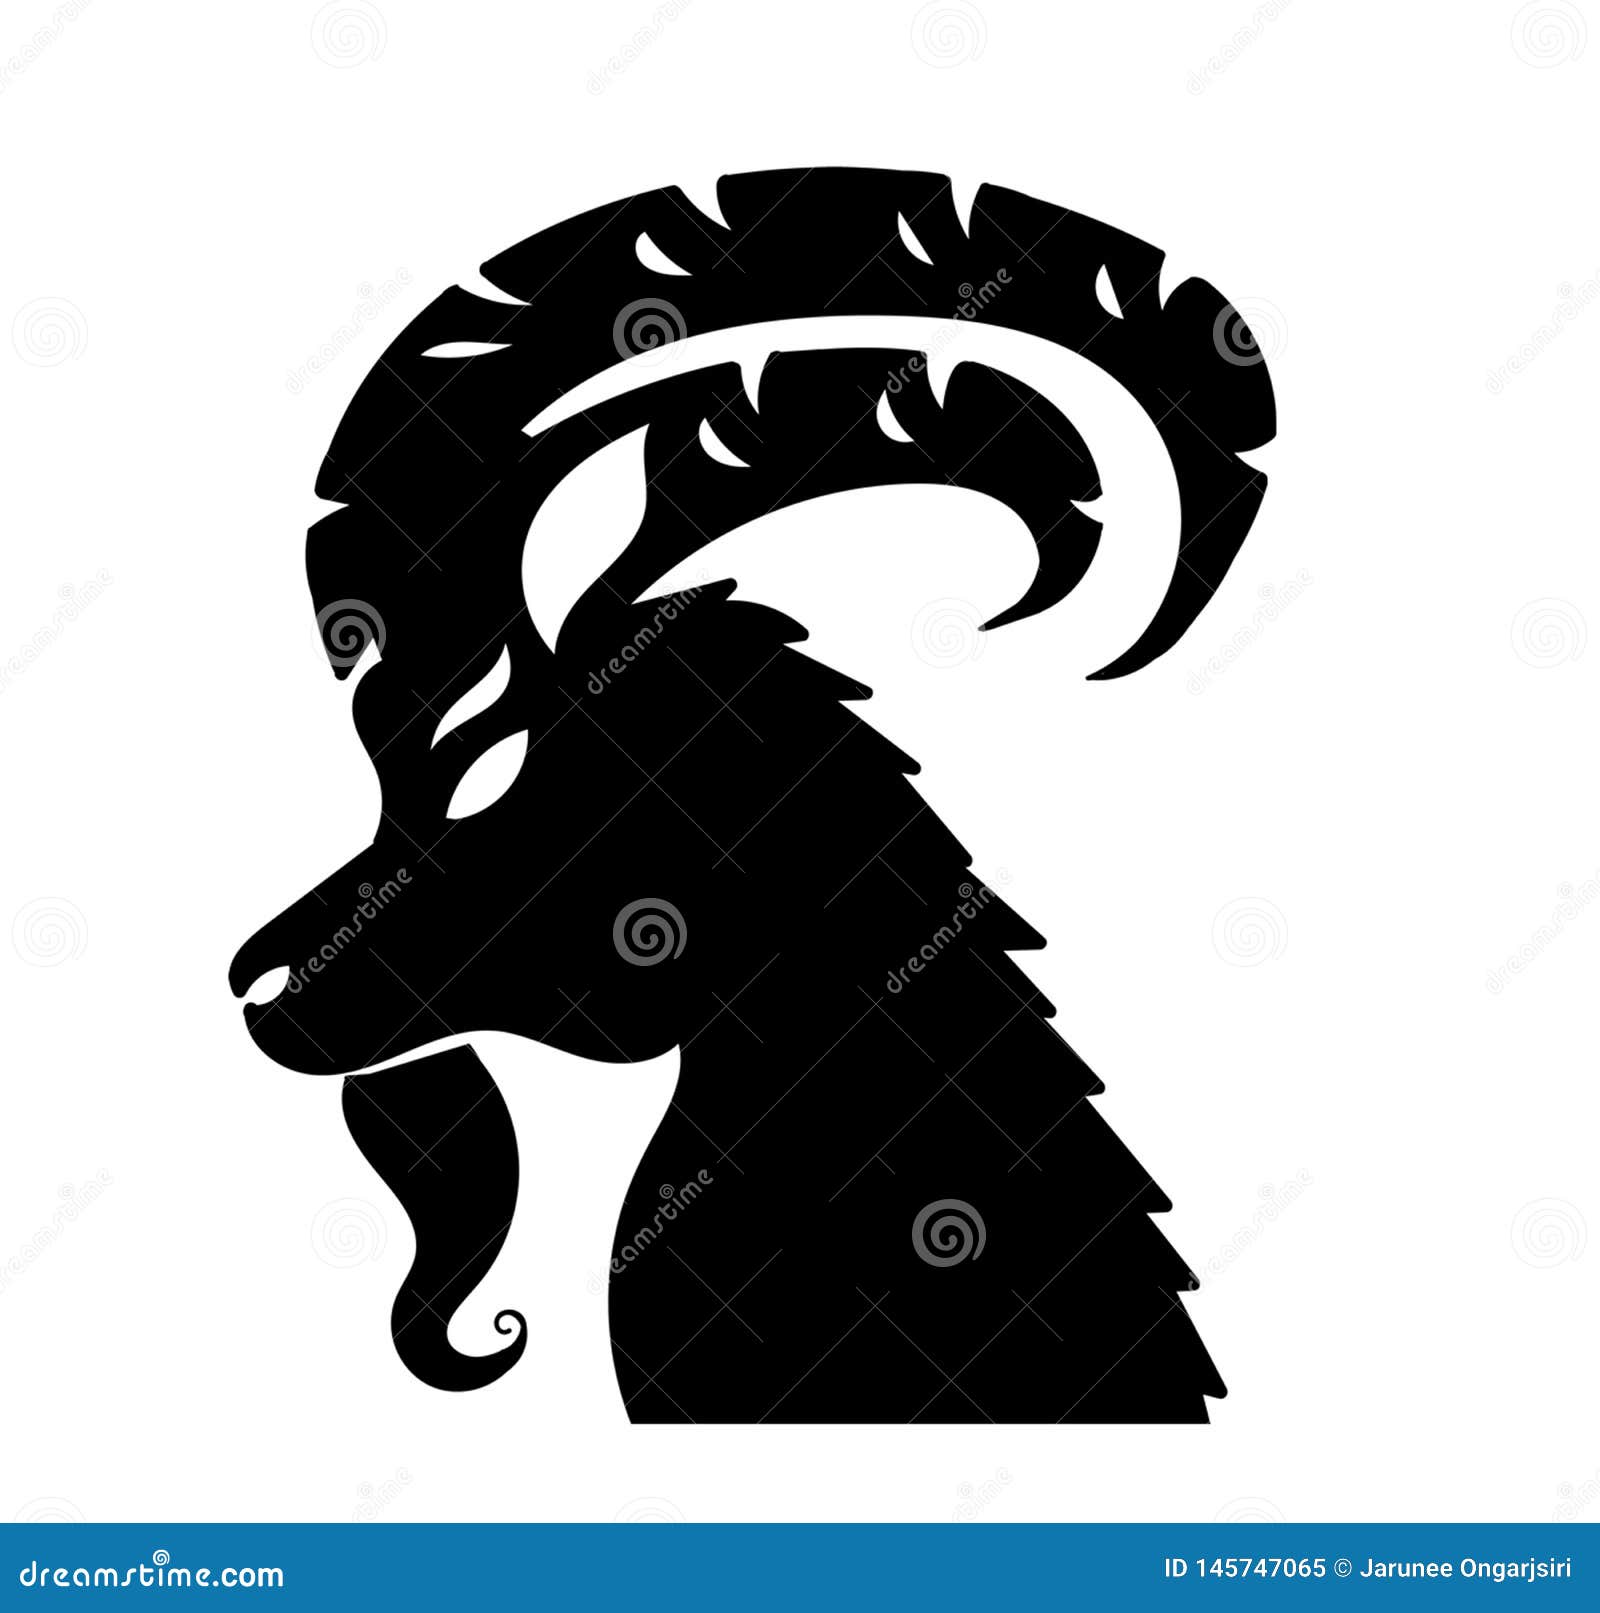 Мужчина коза козерог. Capricorn animal. Чёрная Горная коза, воздух, гороскоп.